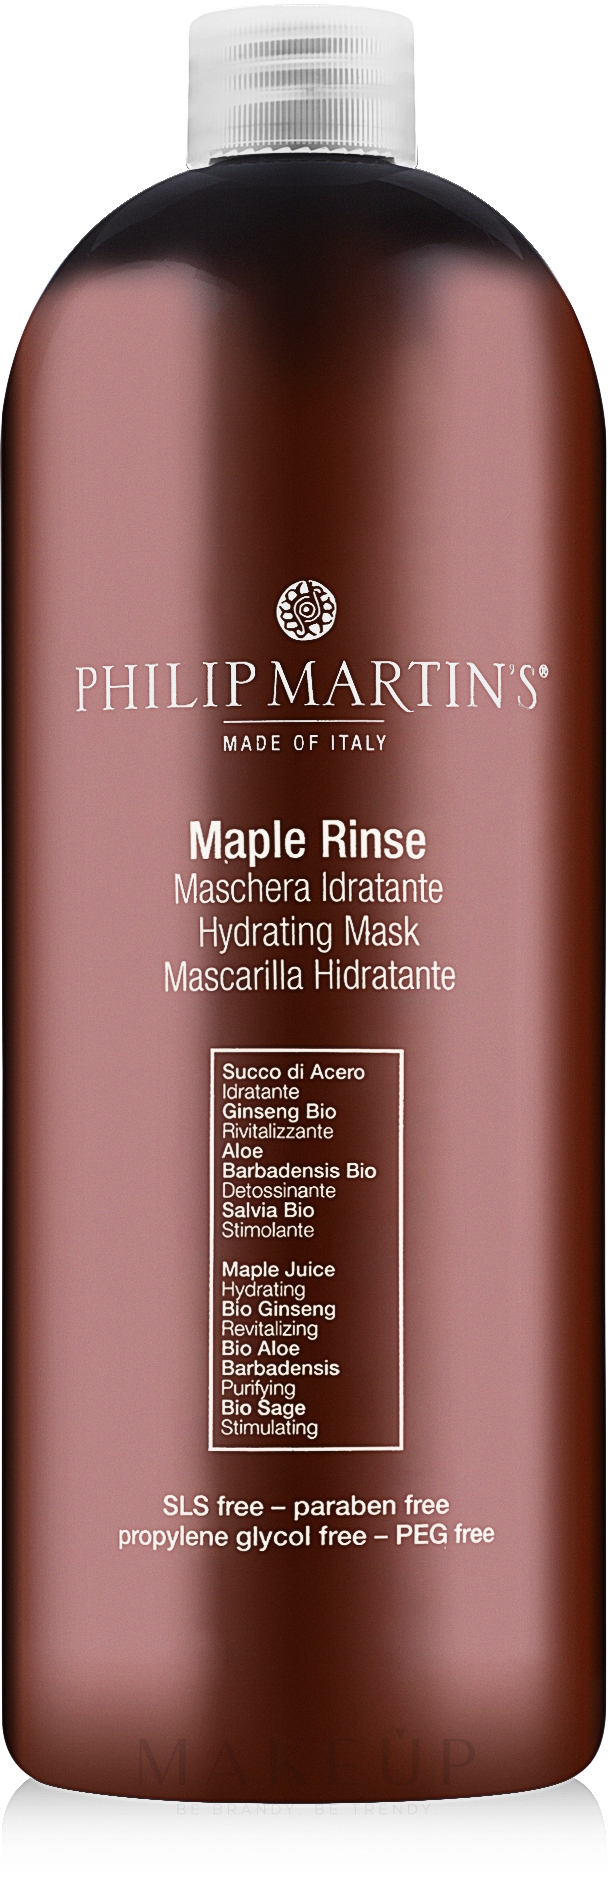 Feuchtigkeitsspendende Haarspülung mit Ahornsaft - Philip Martin's Maple Rinse Conditioner — Bild 1000 ml